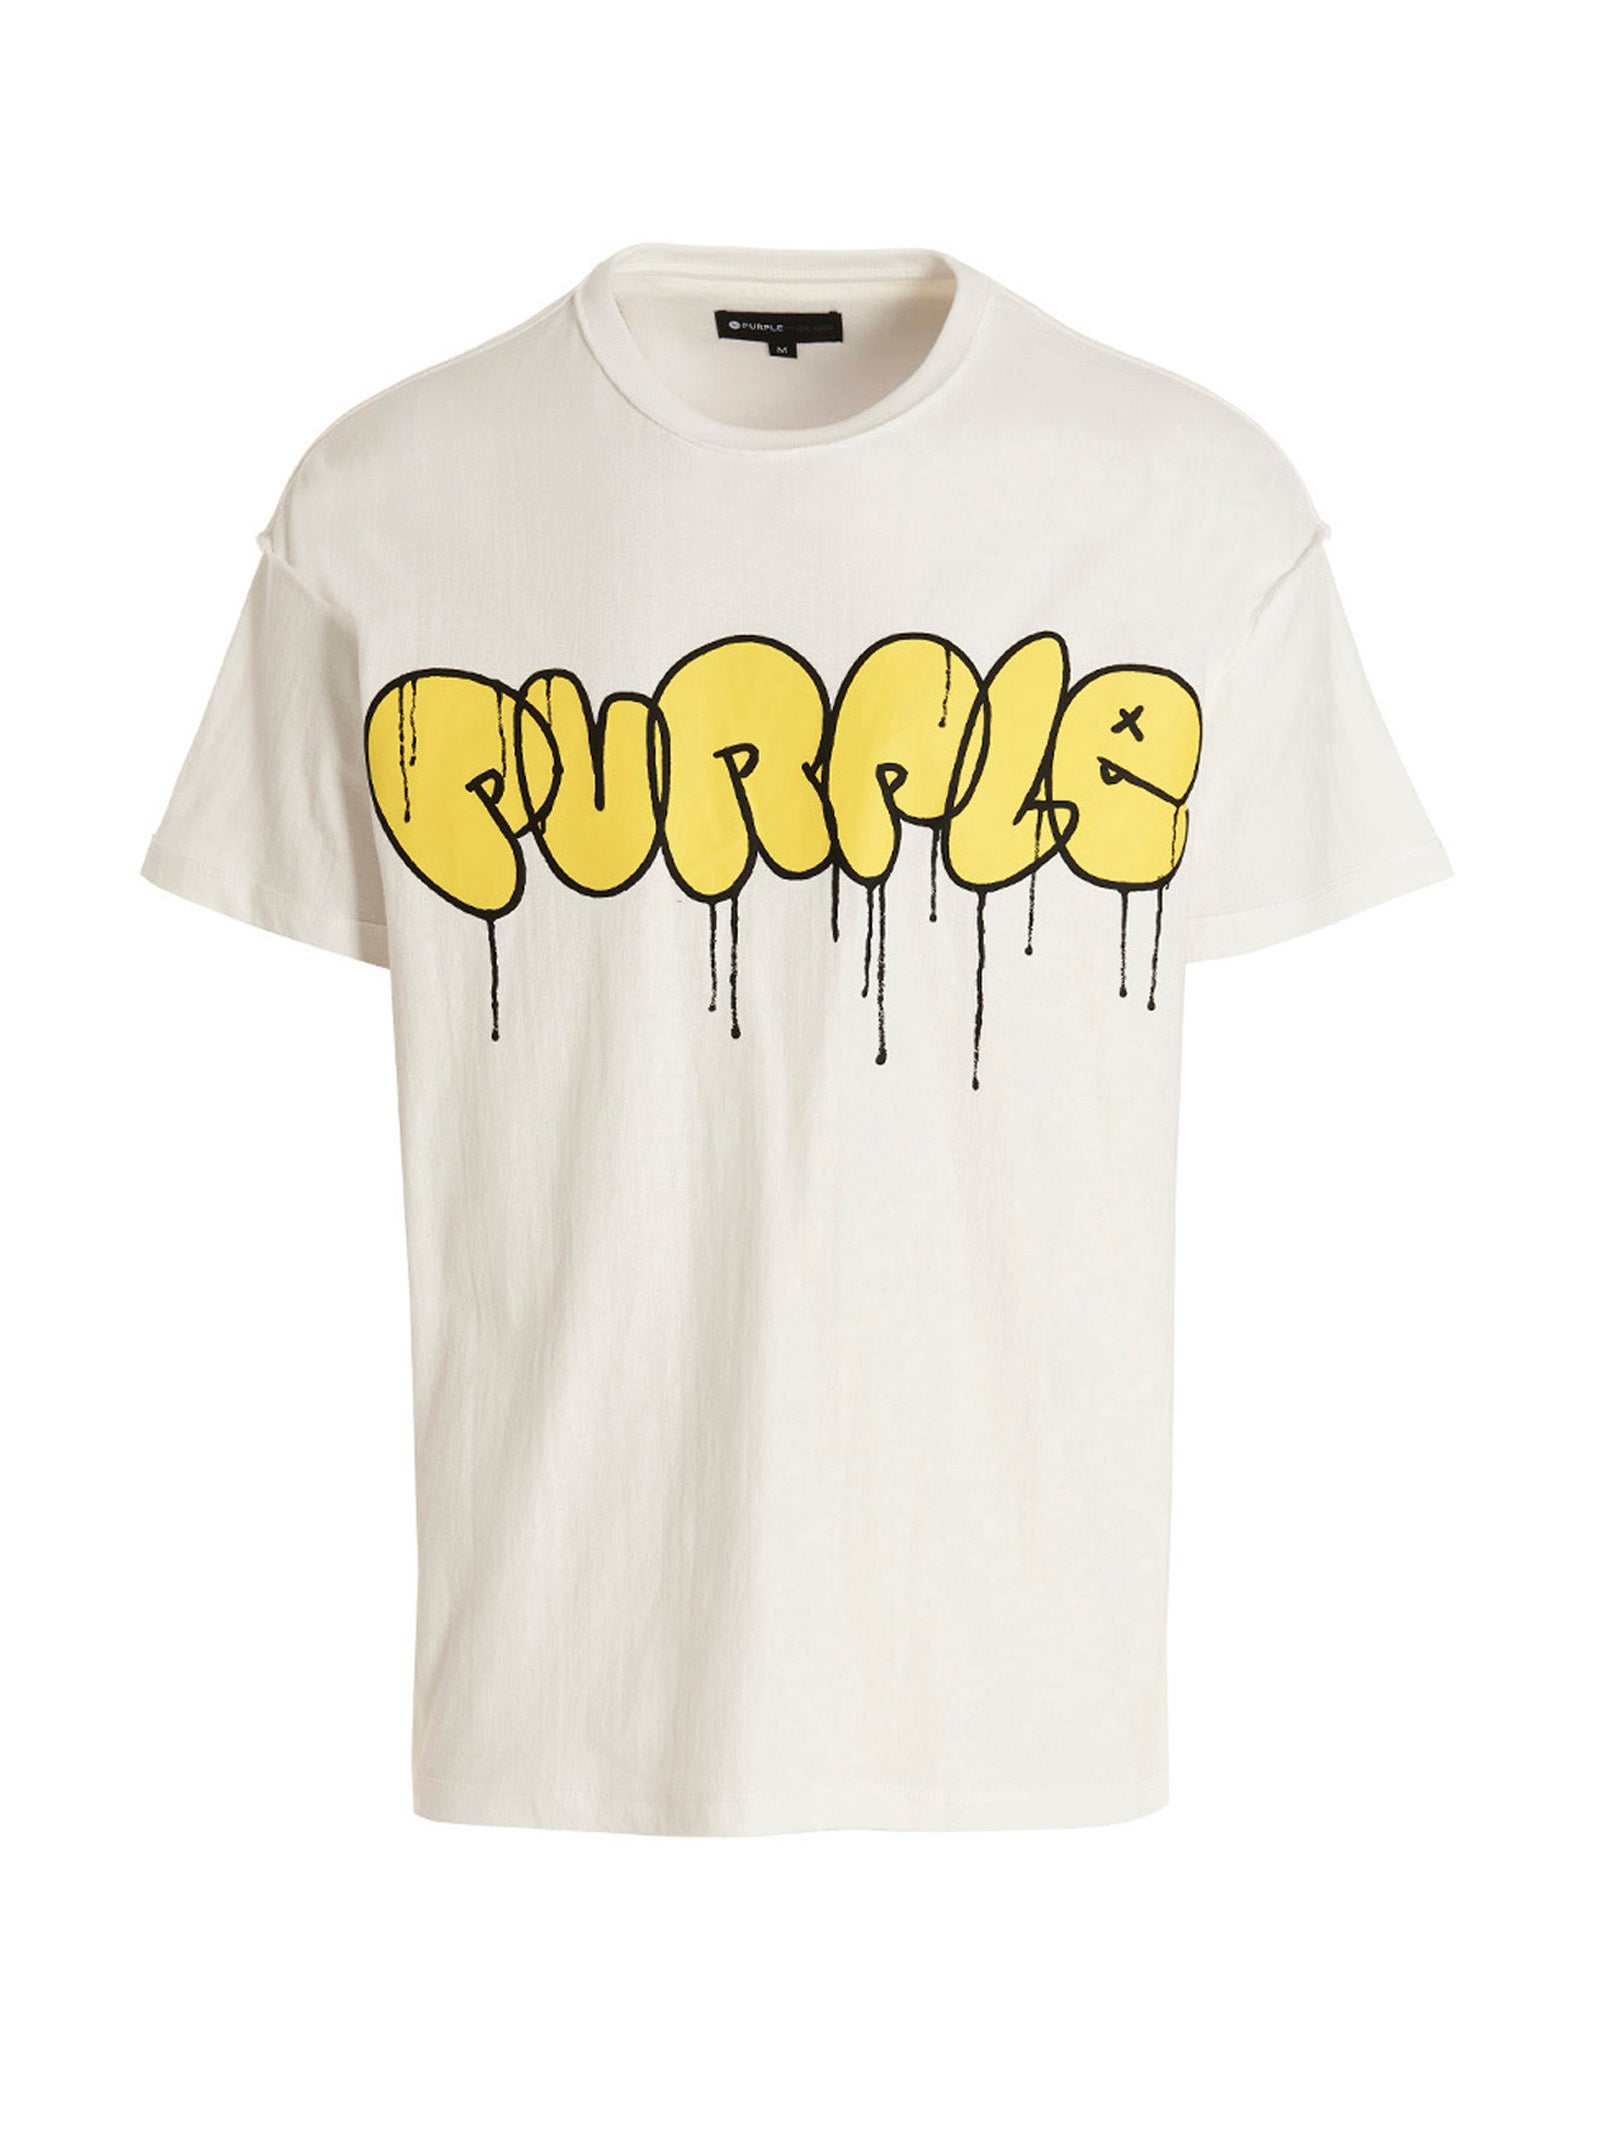 PURPLE Men's Textured Jersey Inside Out T-Shirt